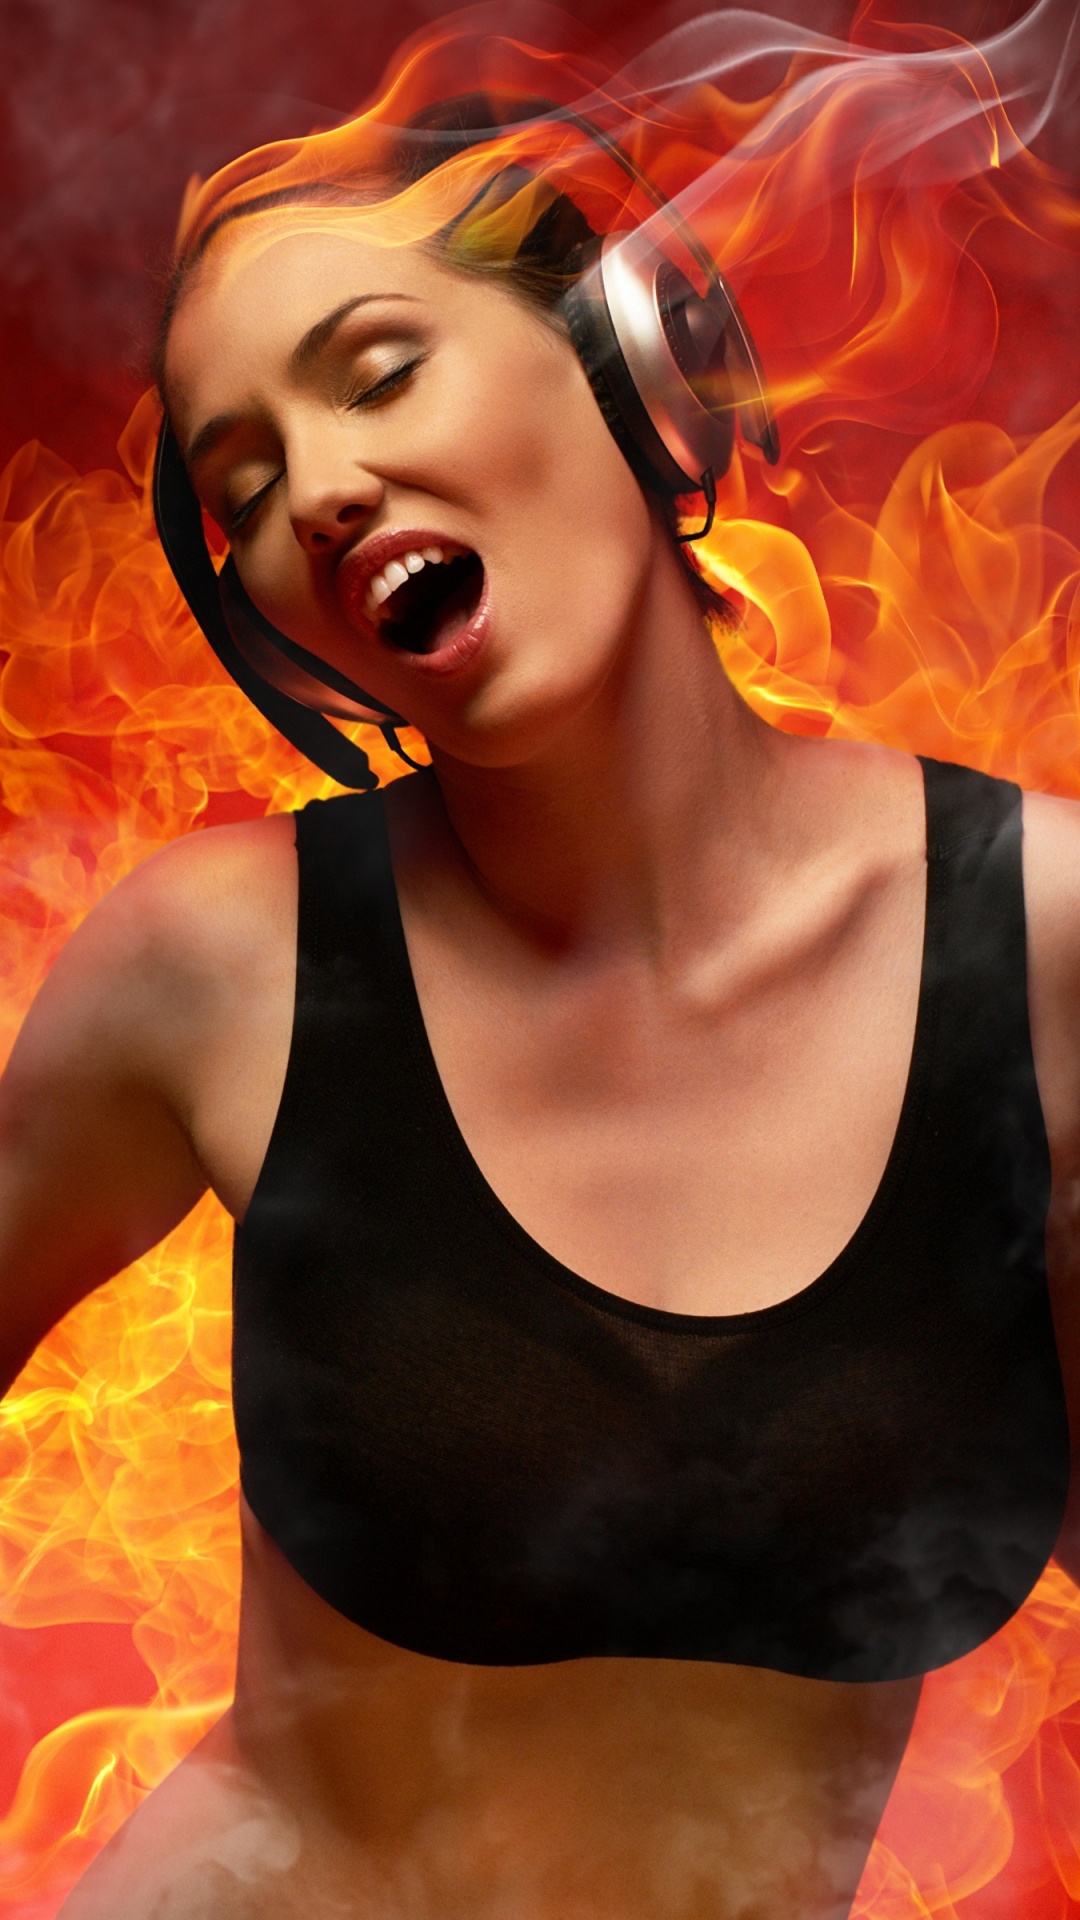 Flamme, Muskel, Feuer, DJ-mixer, Mädchen. Wallpaper in 1080x1920 Resolution